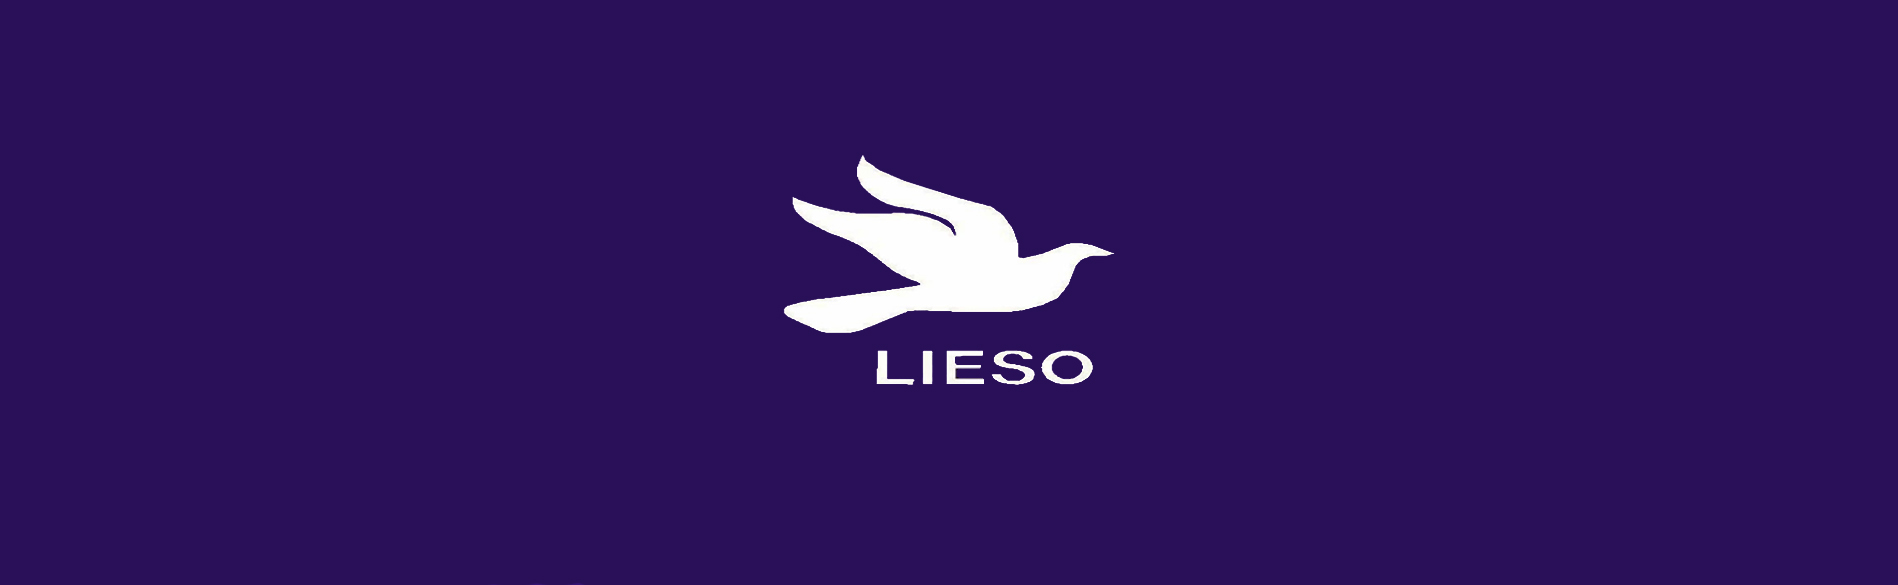 Lieso, simbolo da pomba